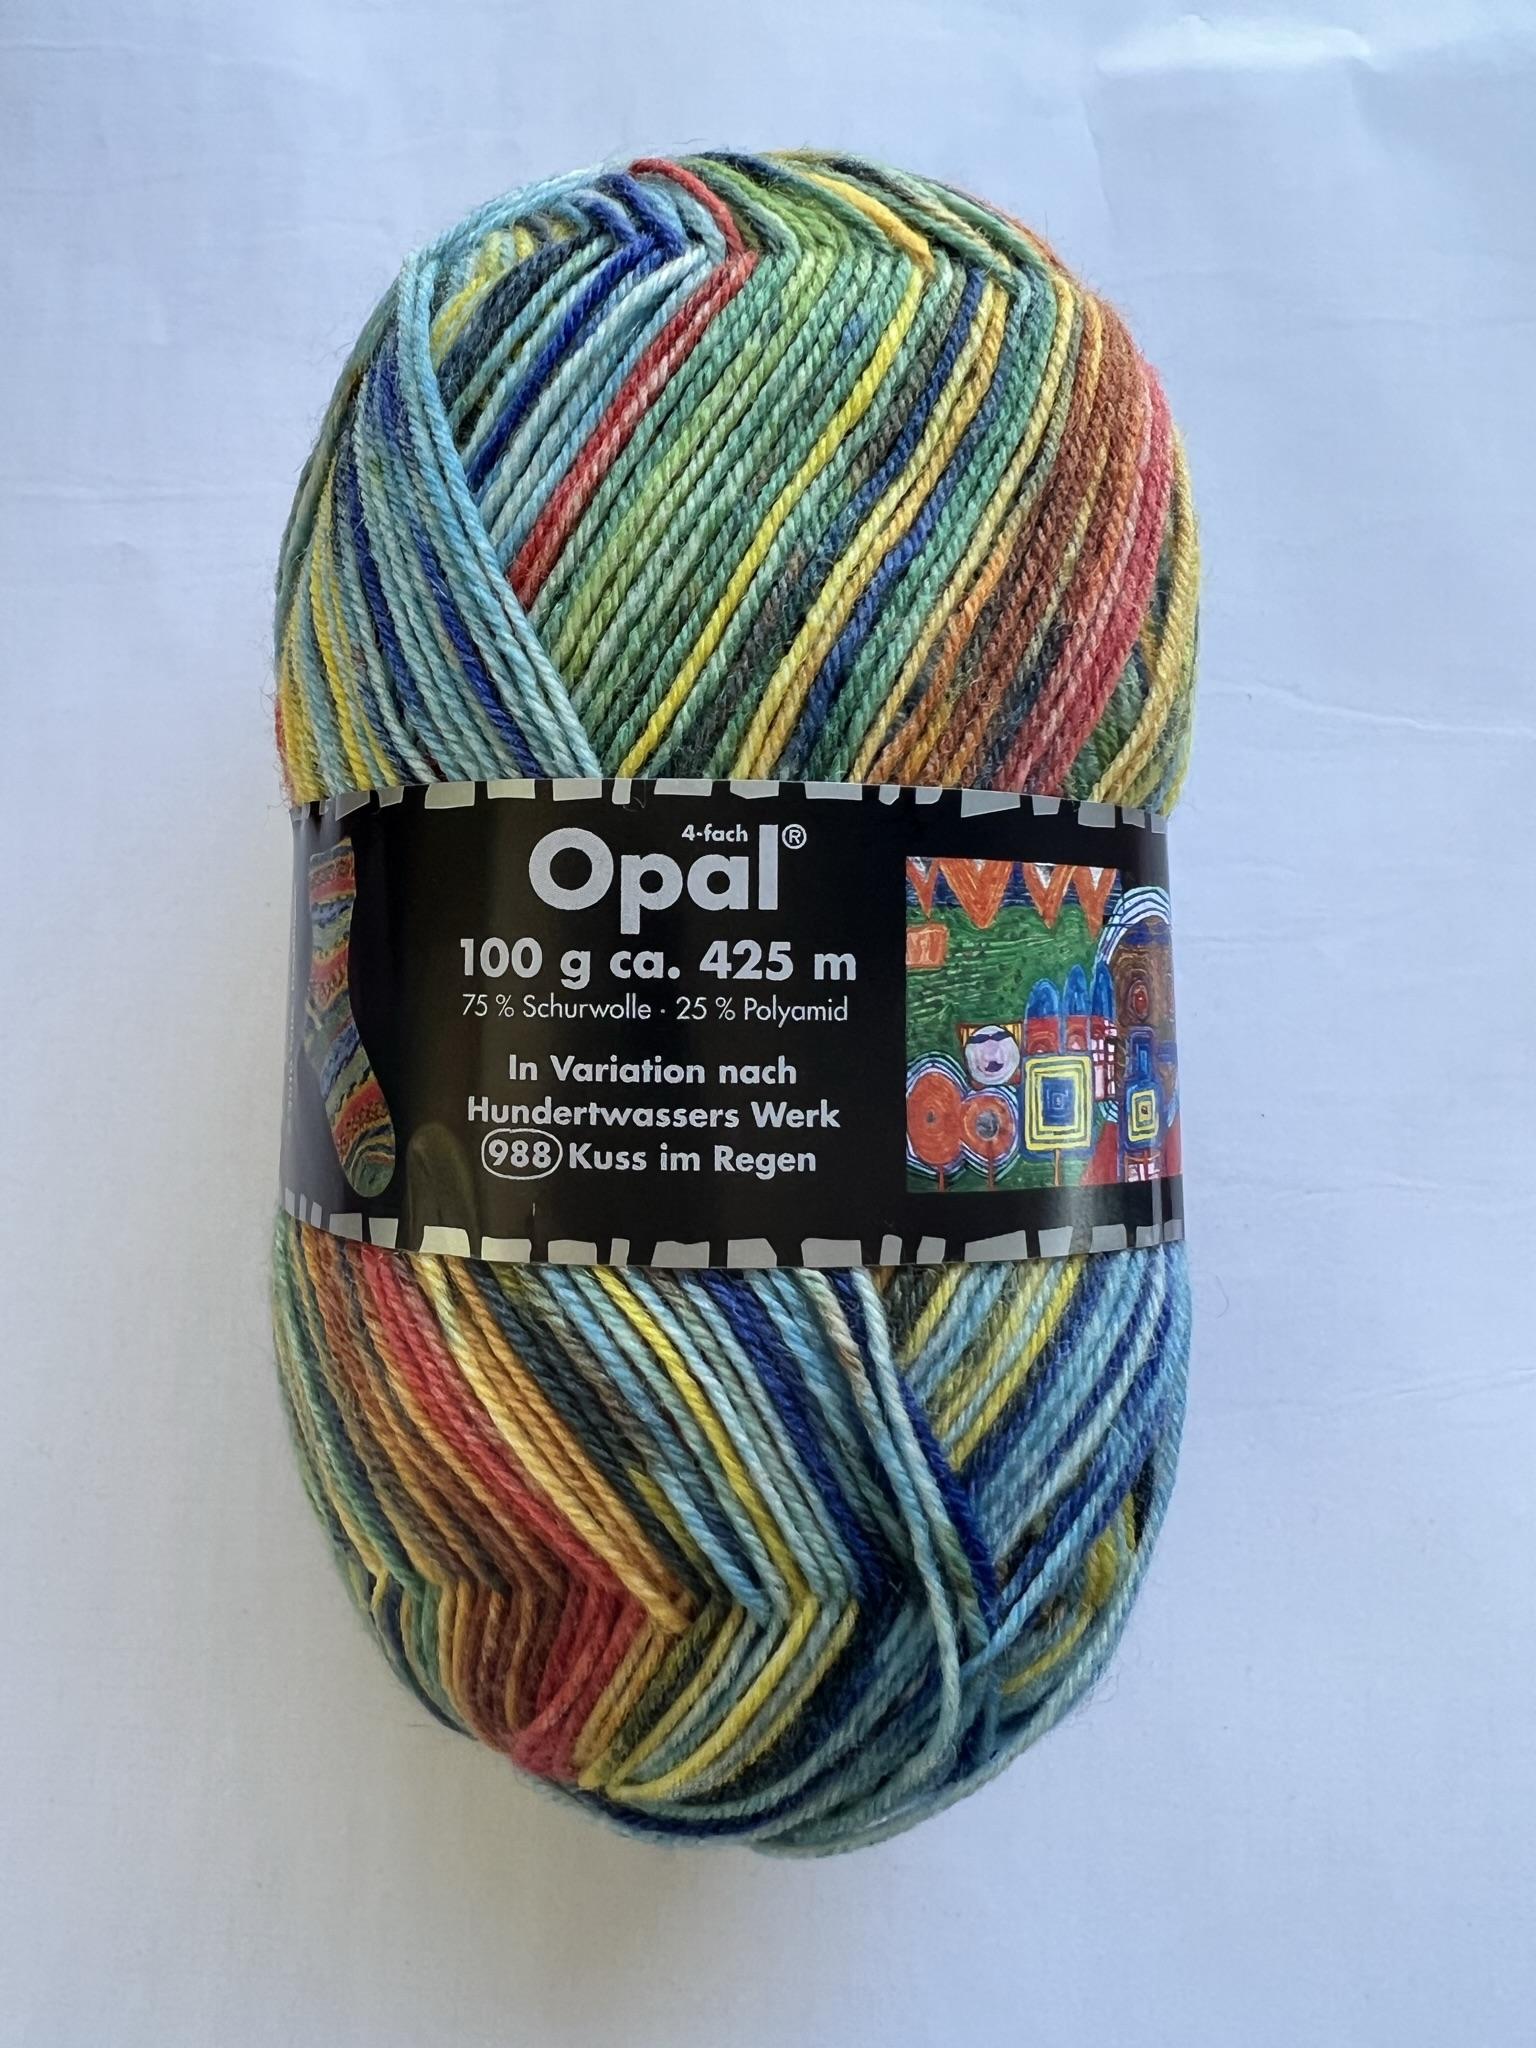 Opal Sock Yarn - Hundertwassers werk -colour 3200 — Little Woollie ...